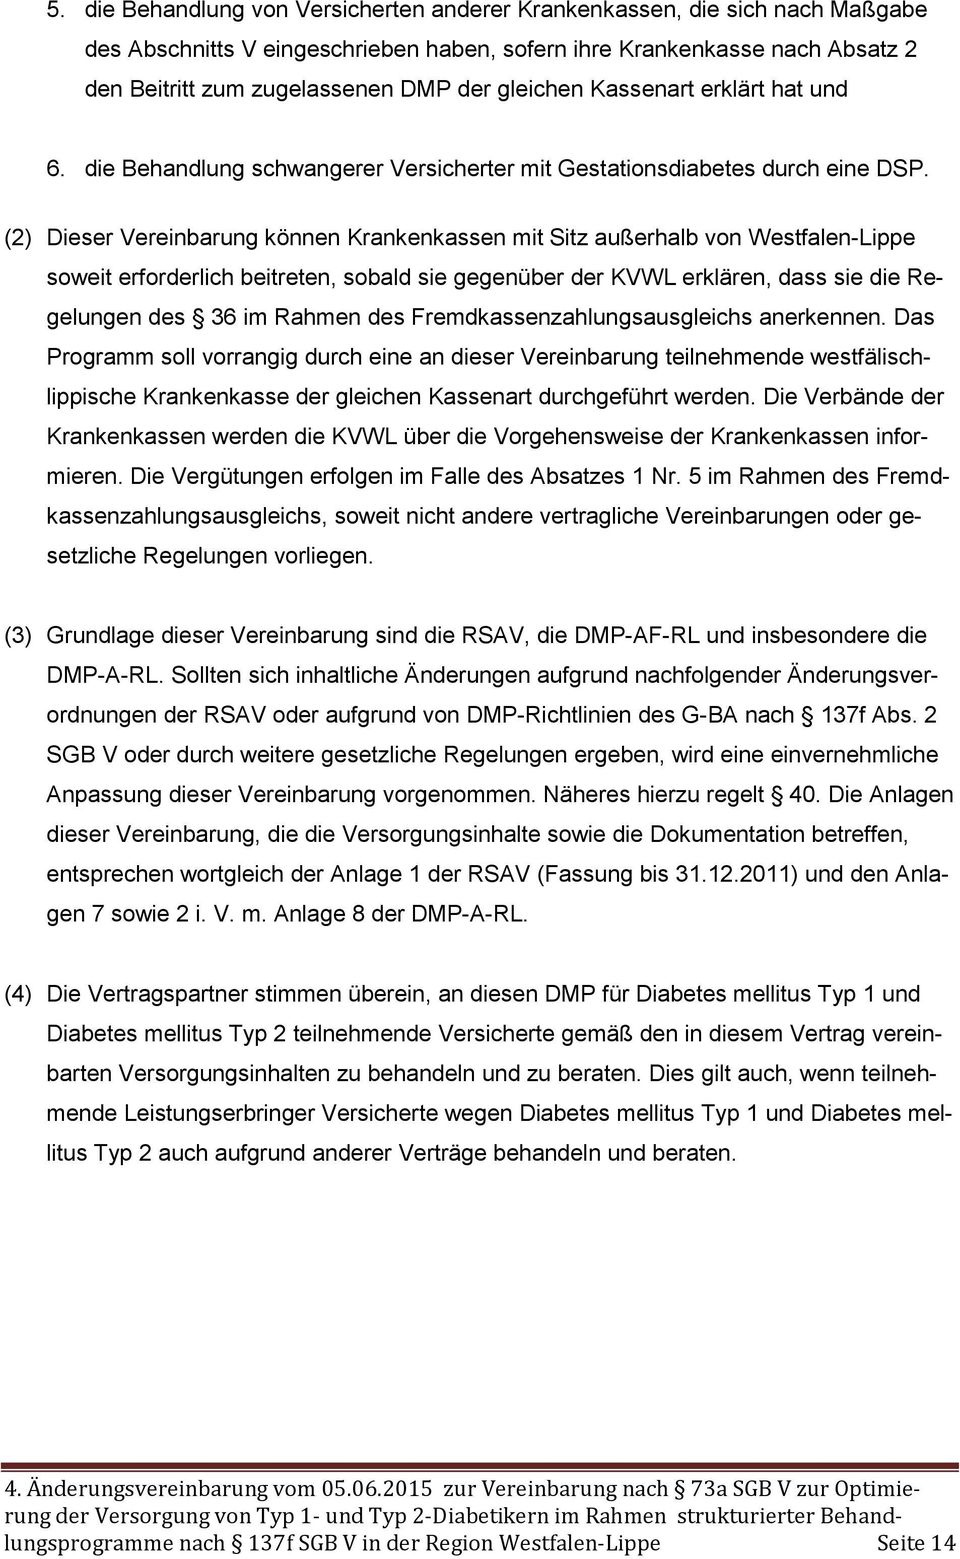 (2) Dieser Vereinbarung können Krankenkassen mit Sitz außerhalb von Westfalen-Lippe soweit erforderlich beitreten, sobald sie gegenüber der KVWL erklären, dass sie die Regelungen des 36 im Rahmen des